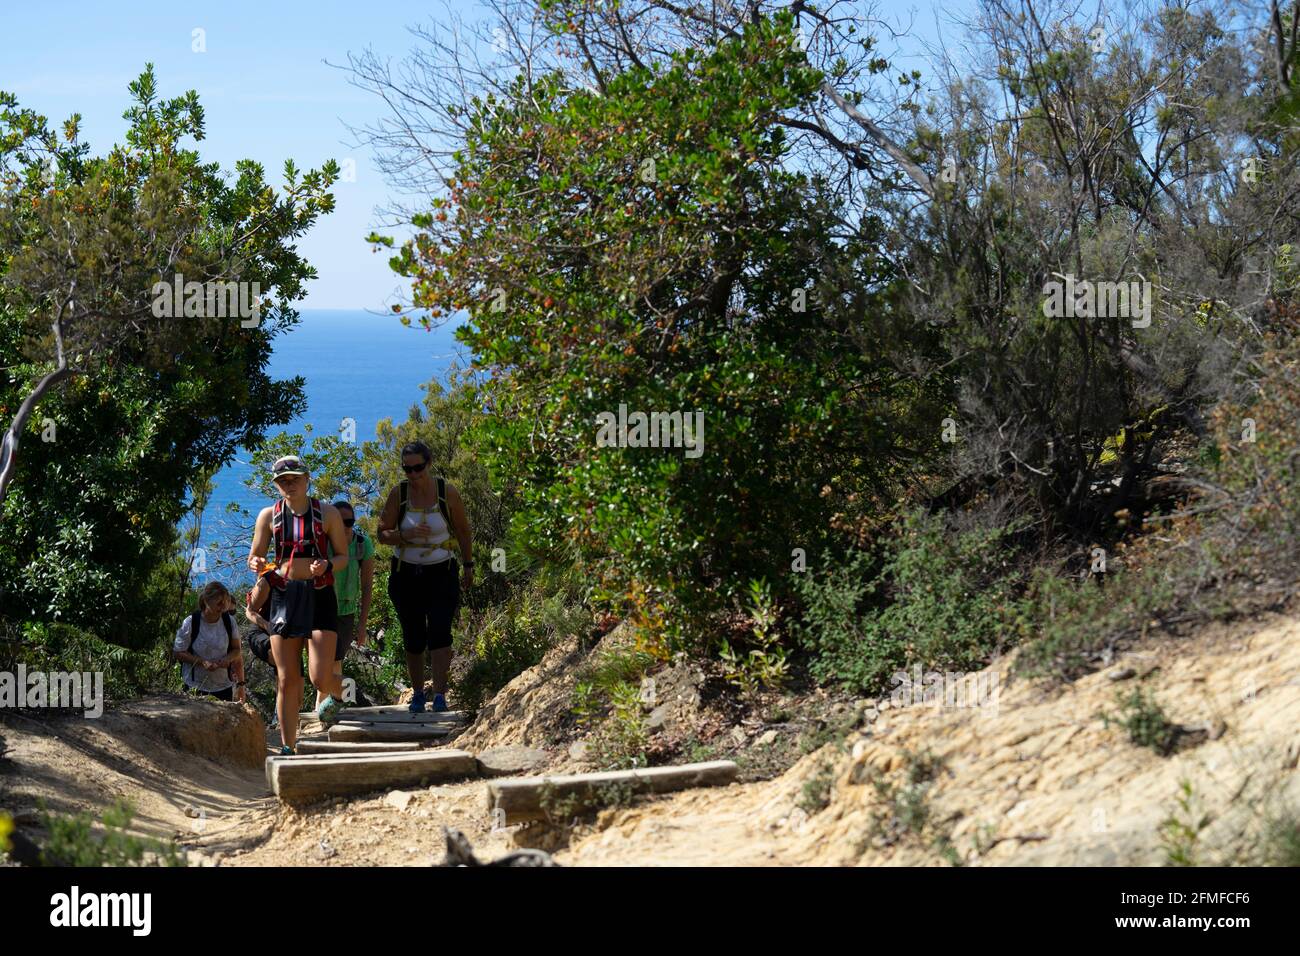 Tourists visiting Cinque Terre National Park, Italy - Turisti nel Parco Nazionale delle Cinque Terre, Italia Stock Photo